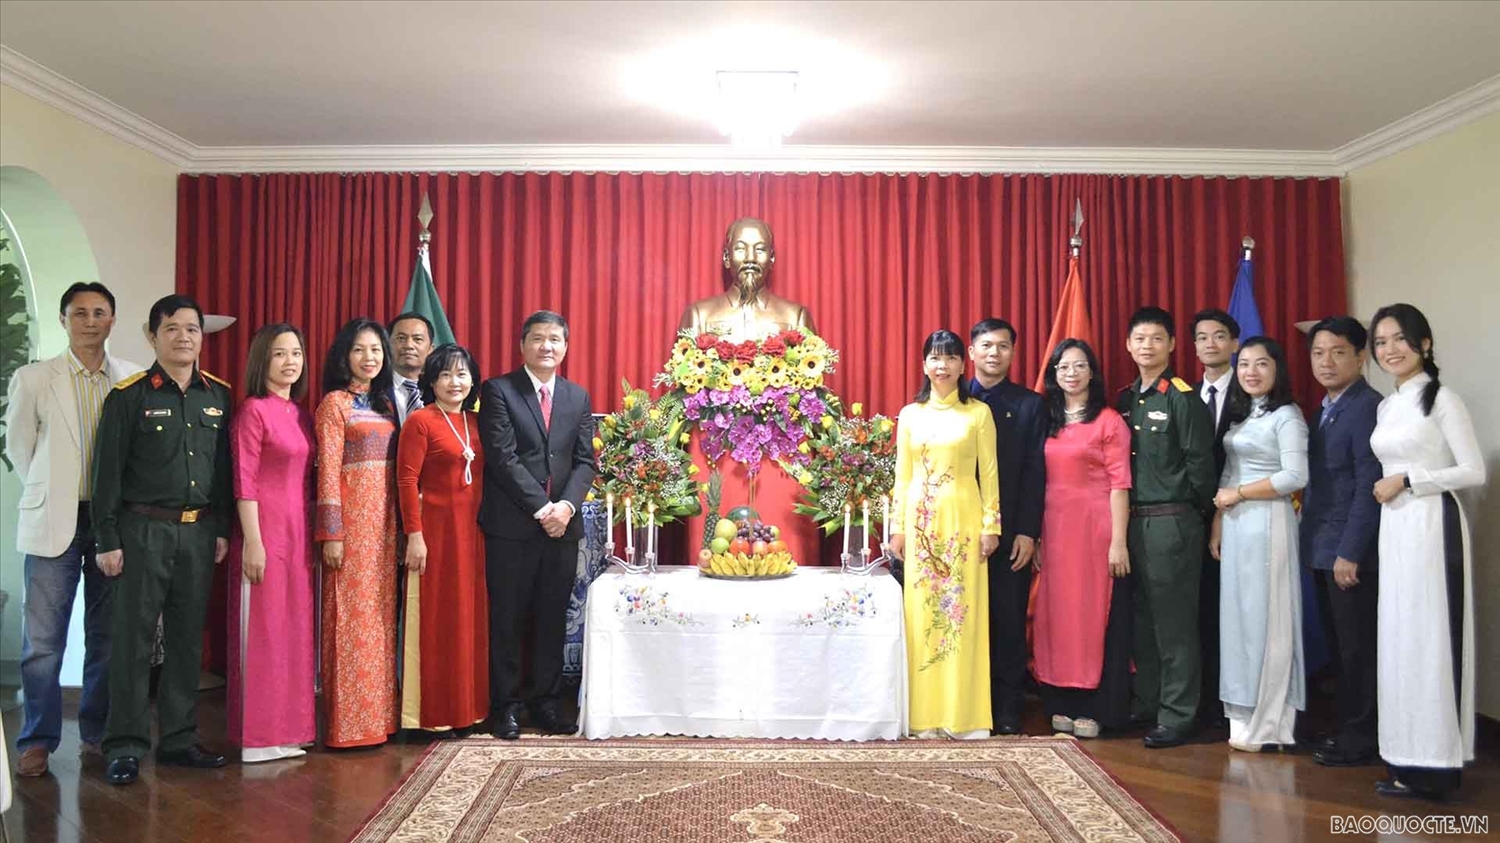 Đại sứ quán Việt Nam tại Brazil tổ chức lễ dâng hương tưởng nhớ Chủ tịch Hồ Chí Minh và chụp hình lưu niệm